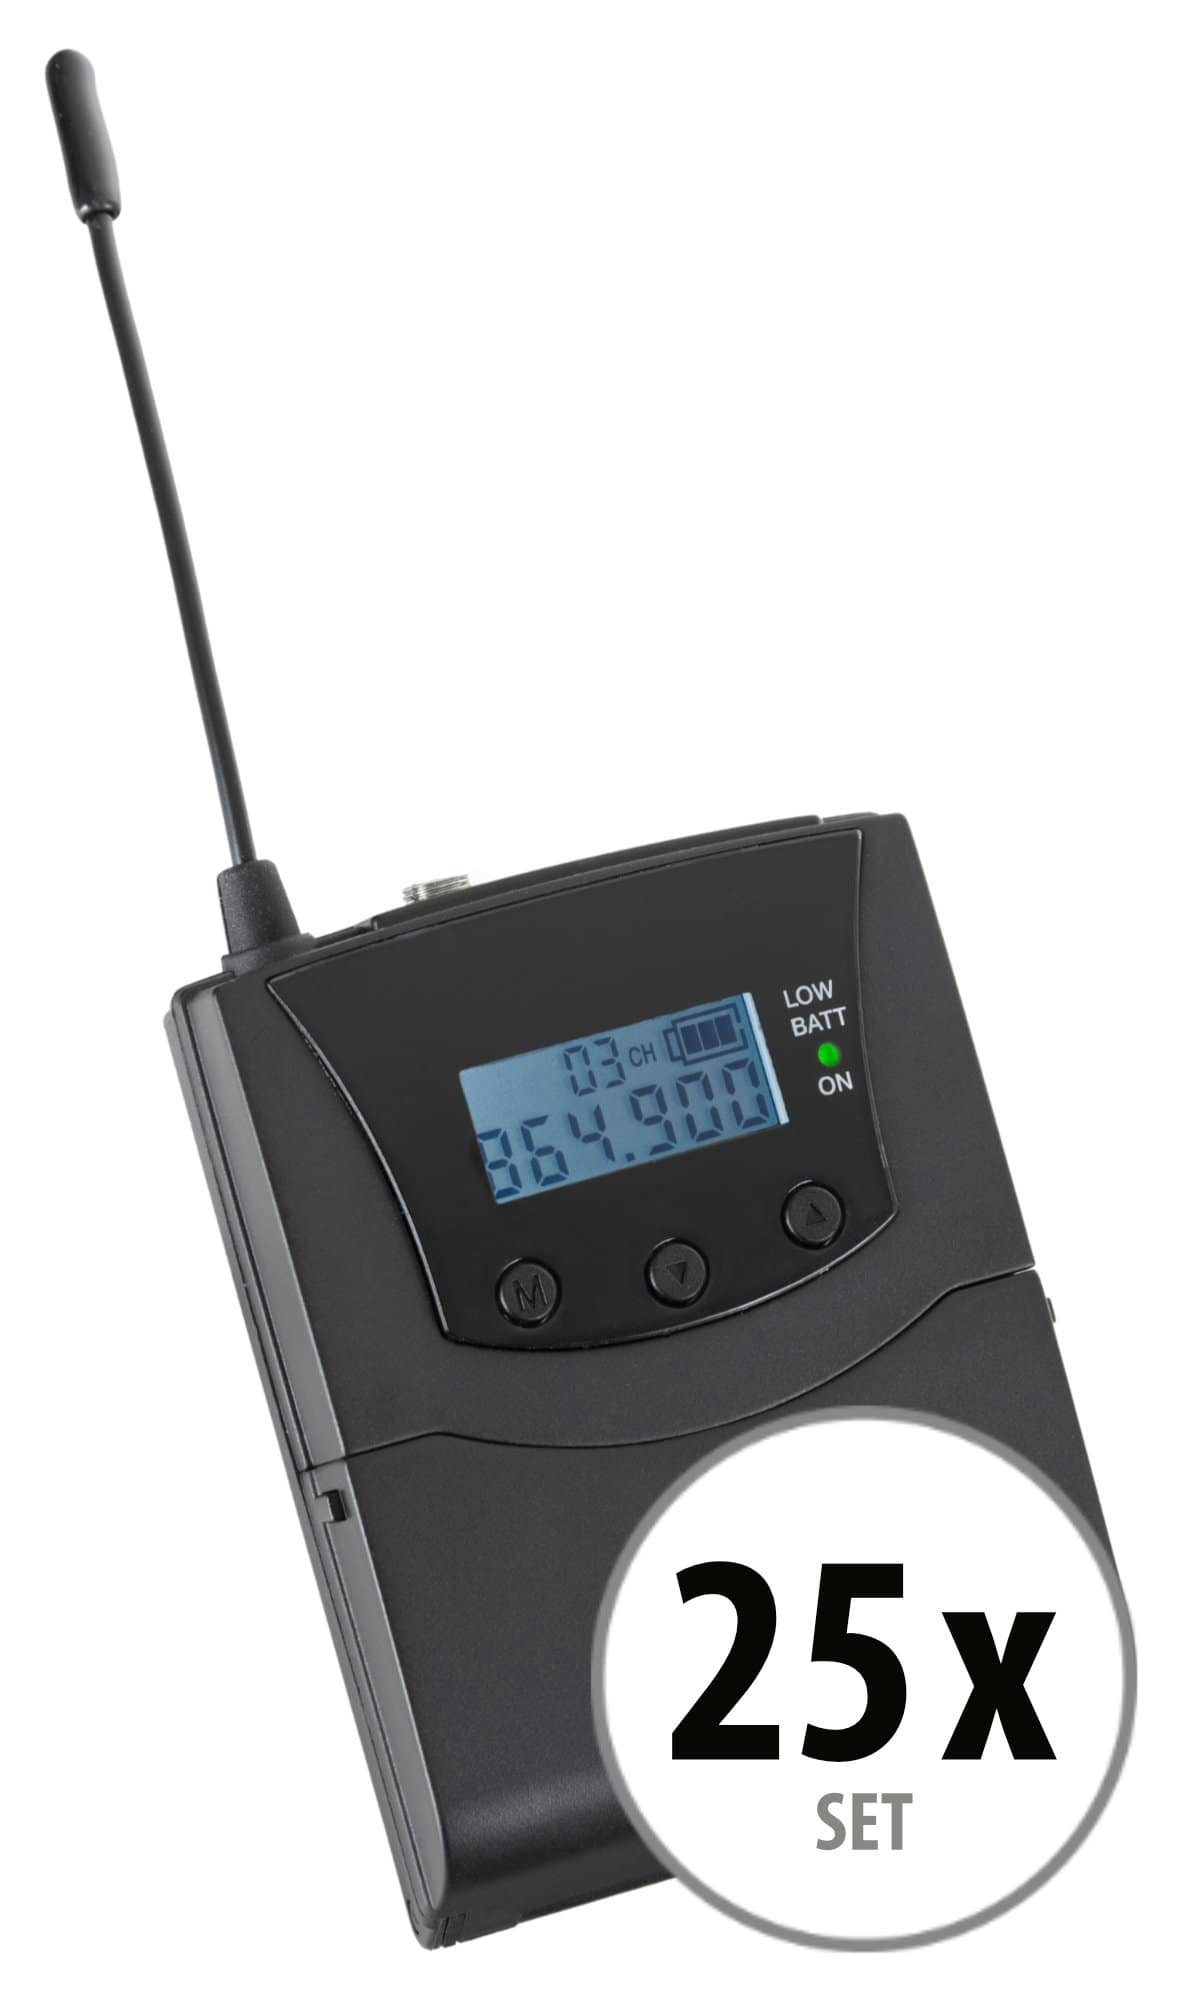 Beatfoxx Silent Verwendung handelsüblichen jedem 3 V2 mit Kopfhörer) Guide empfangbare Bodypack-Receiver UHF-Technik, Funk-Kopfhörer (Stereo Funk-Empfänger mit Kanäle, SDR-BP30 zur